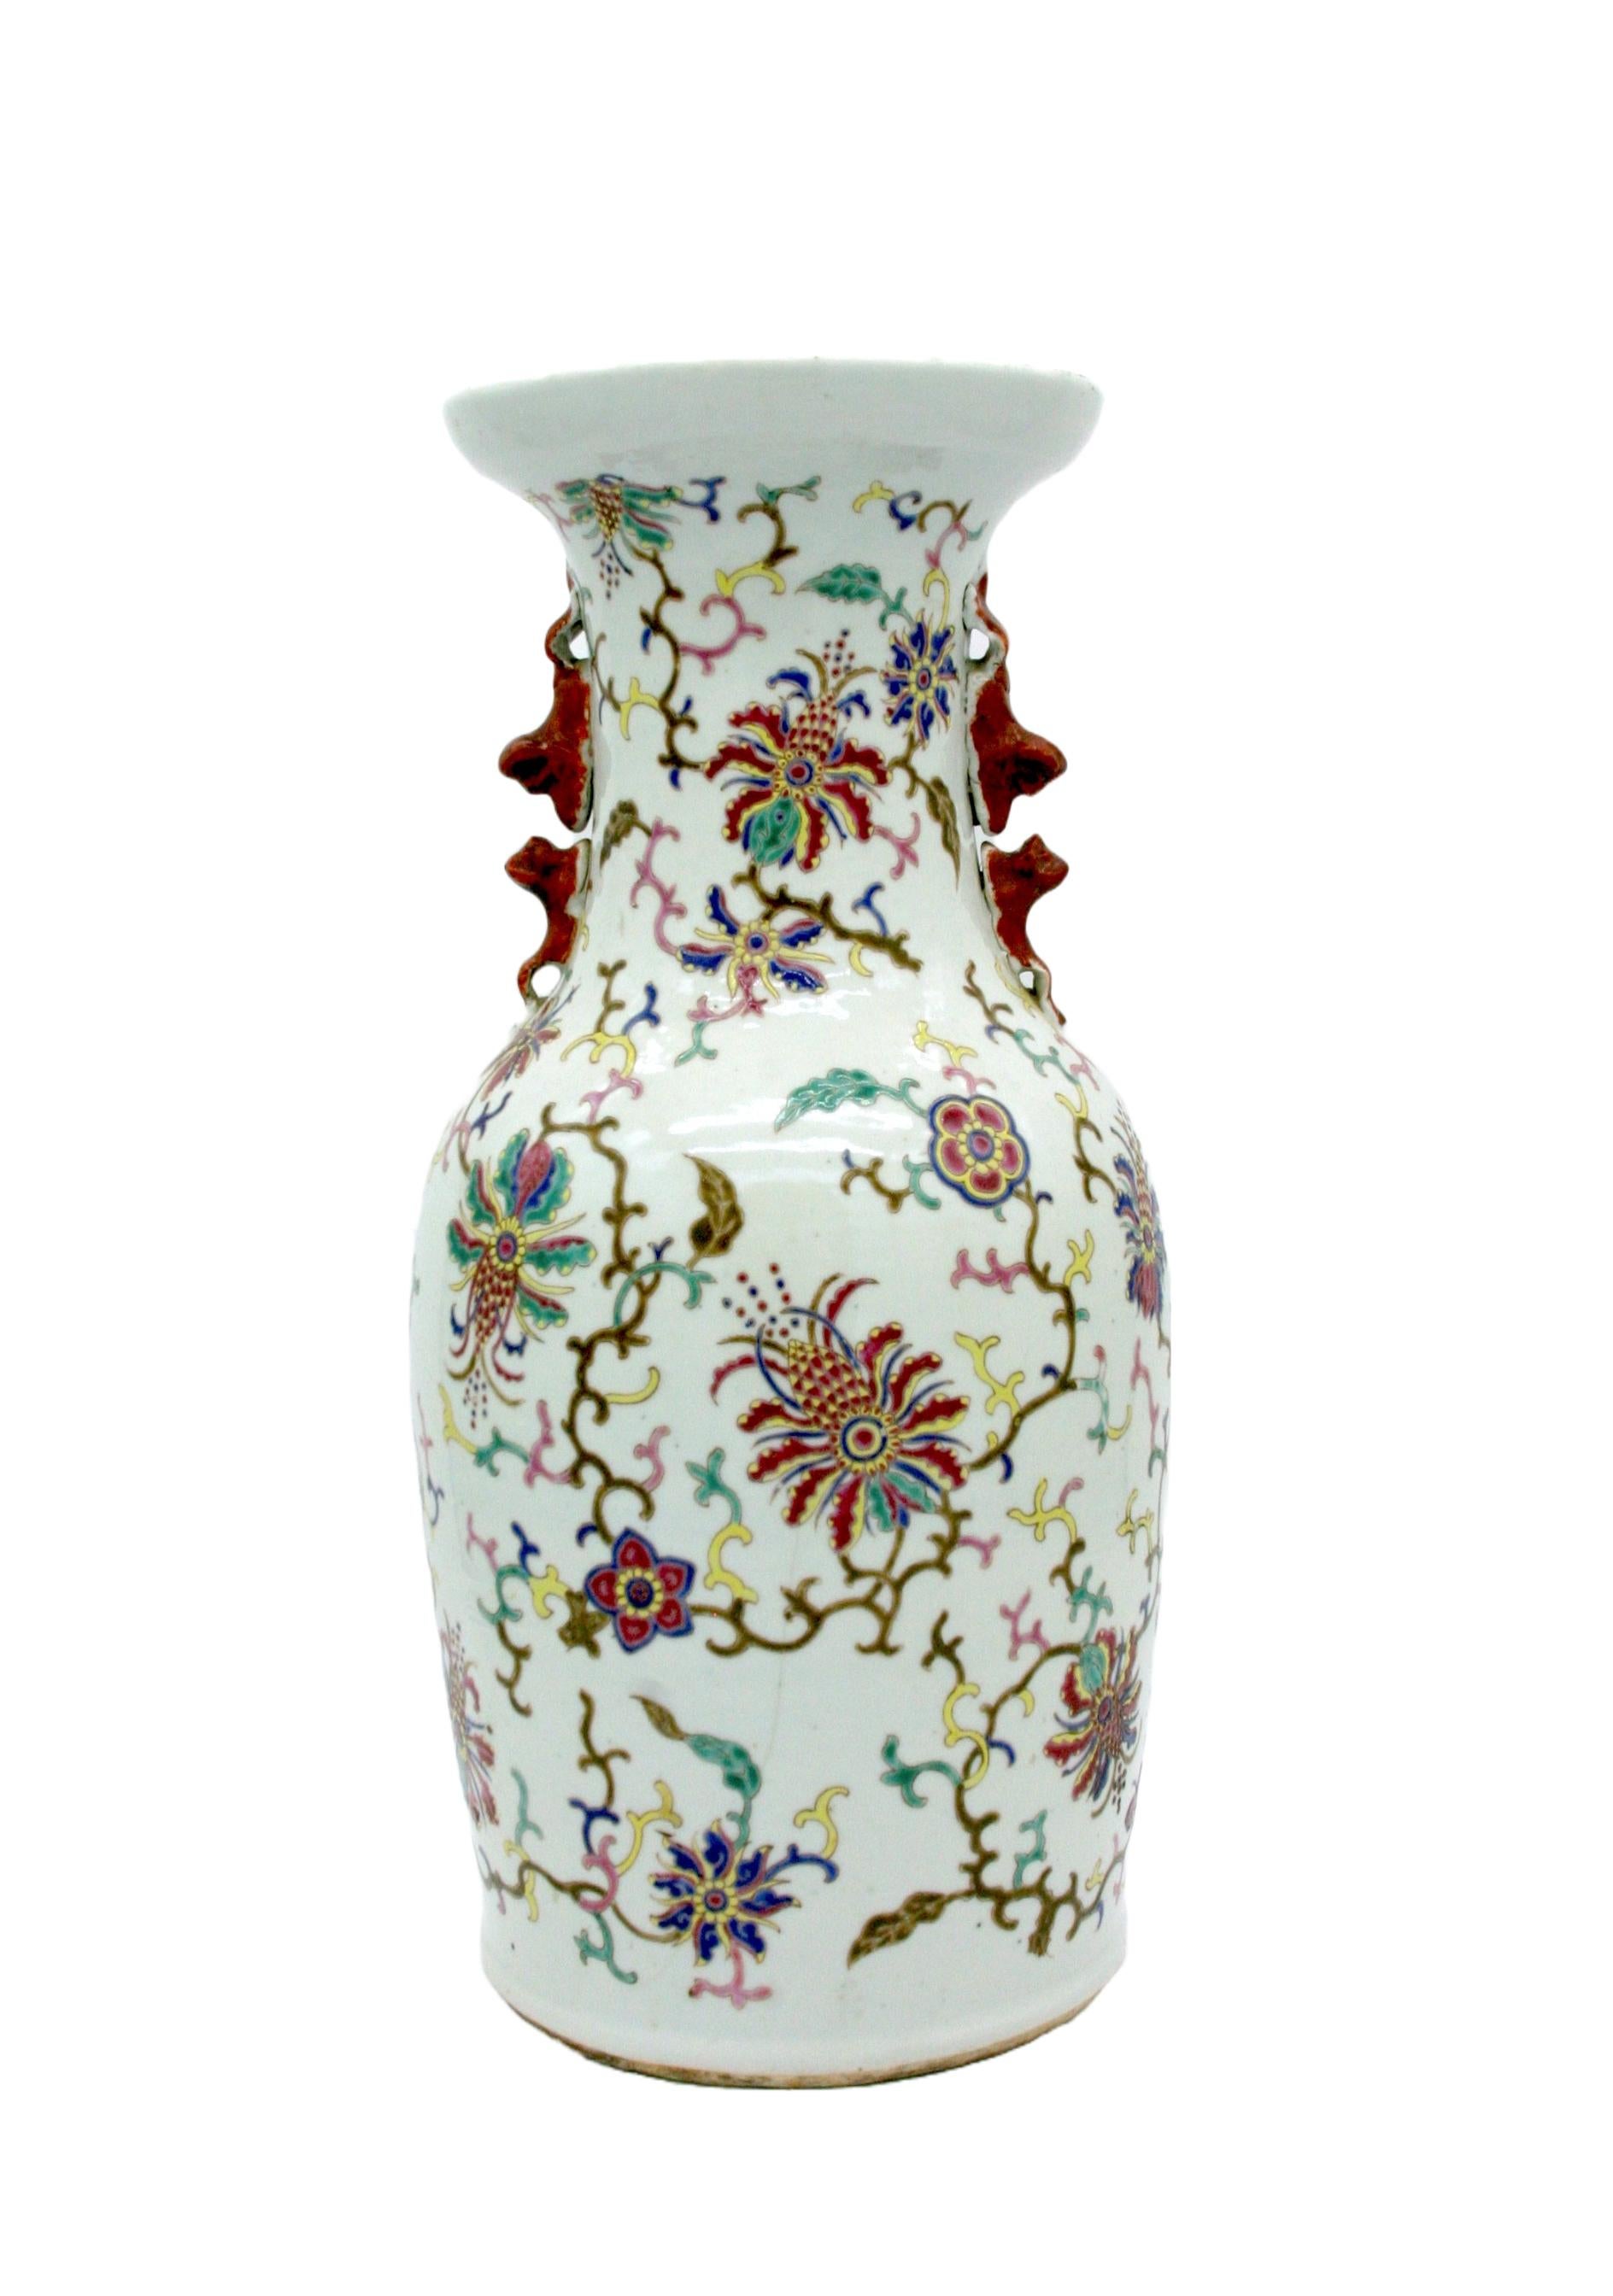 19th Century Asian Porcelain Decorative Vase/Piece For Sale 4